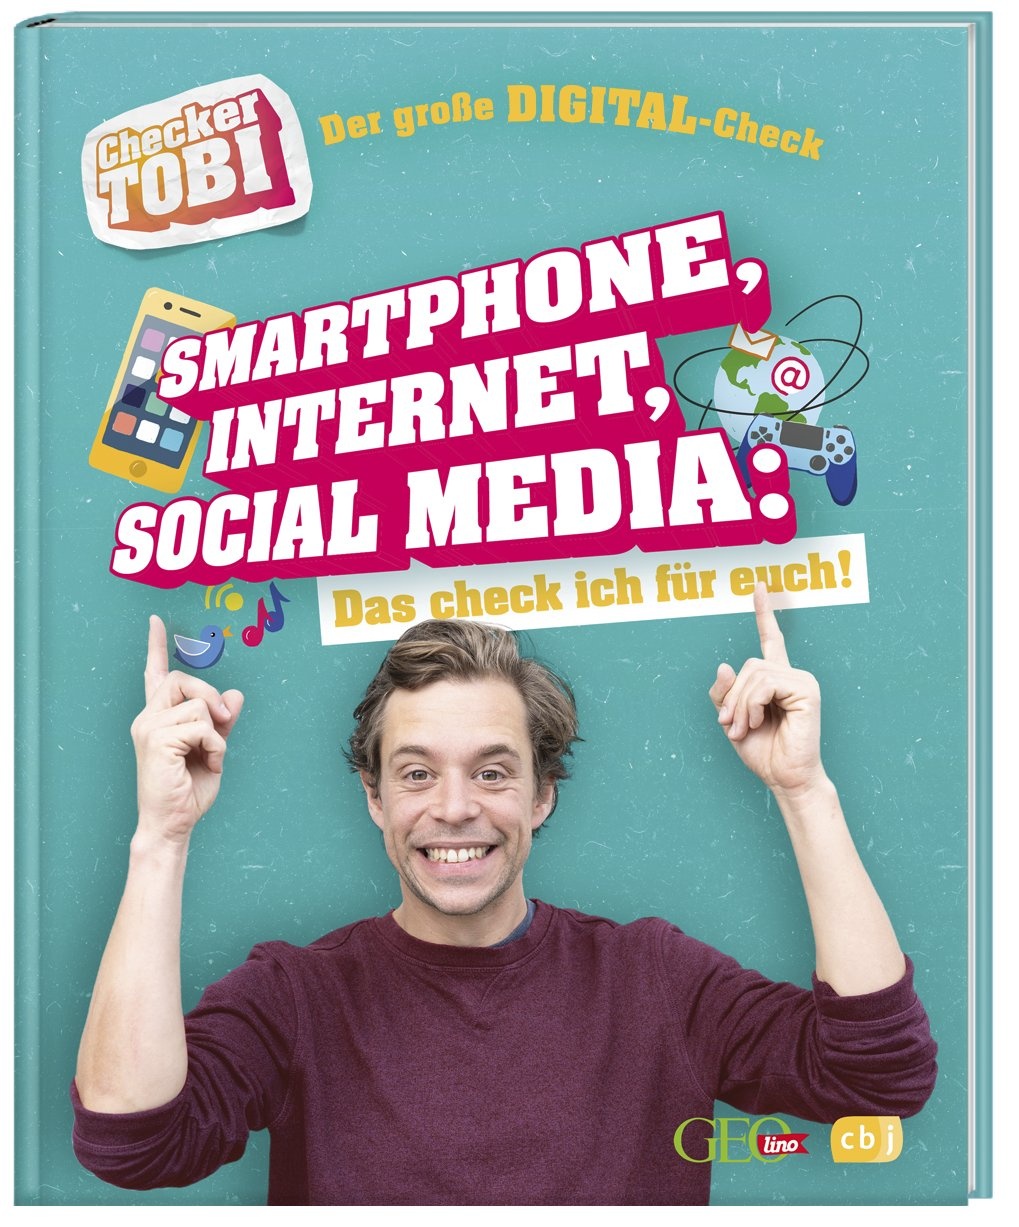 Der Große Digital-Check: Smartphone  Internet  Social Media / Checker Tobi Bd.2 - Gregor Eisenbeiß  Gebunden